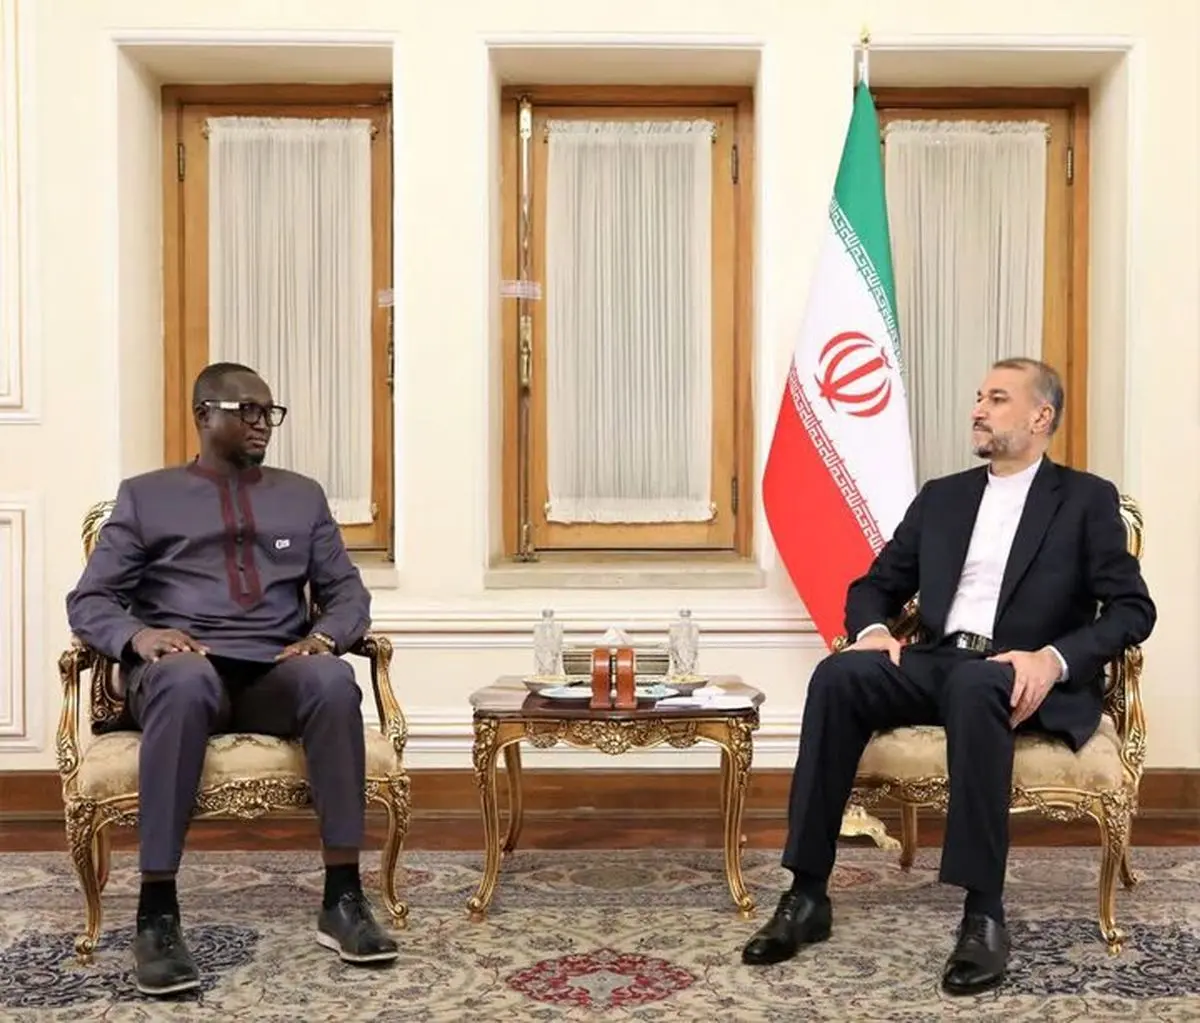 جزئیات دیدار یک مقام از آفریقای مرکزی با وزیر خارجه ایران